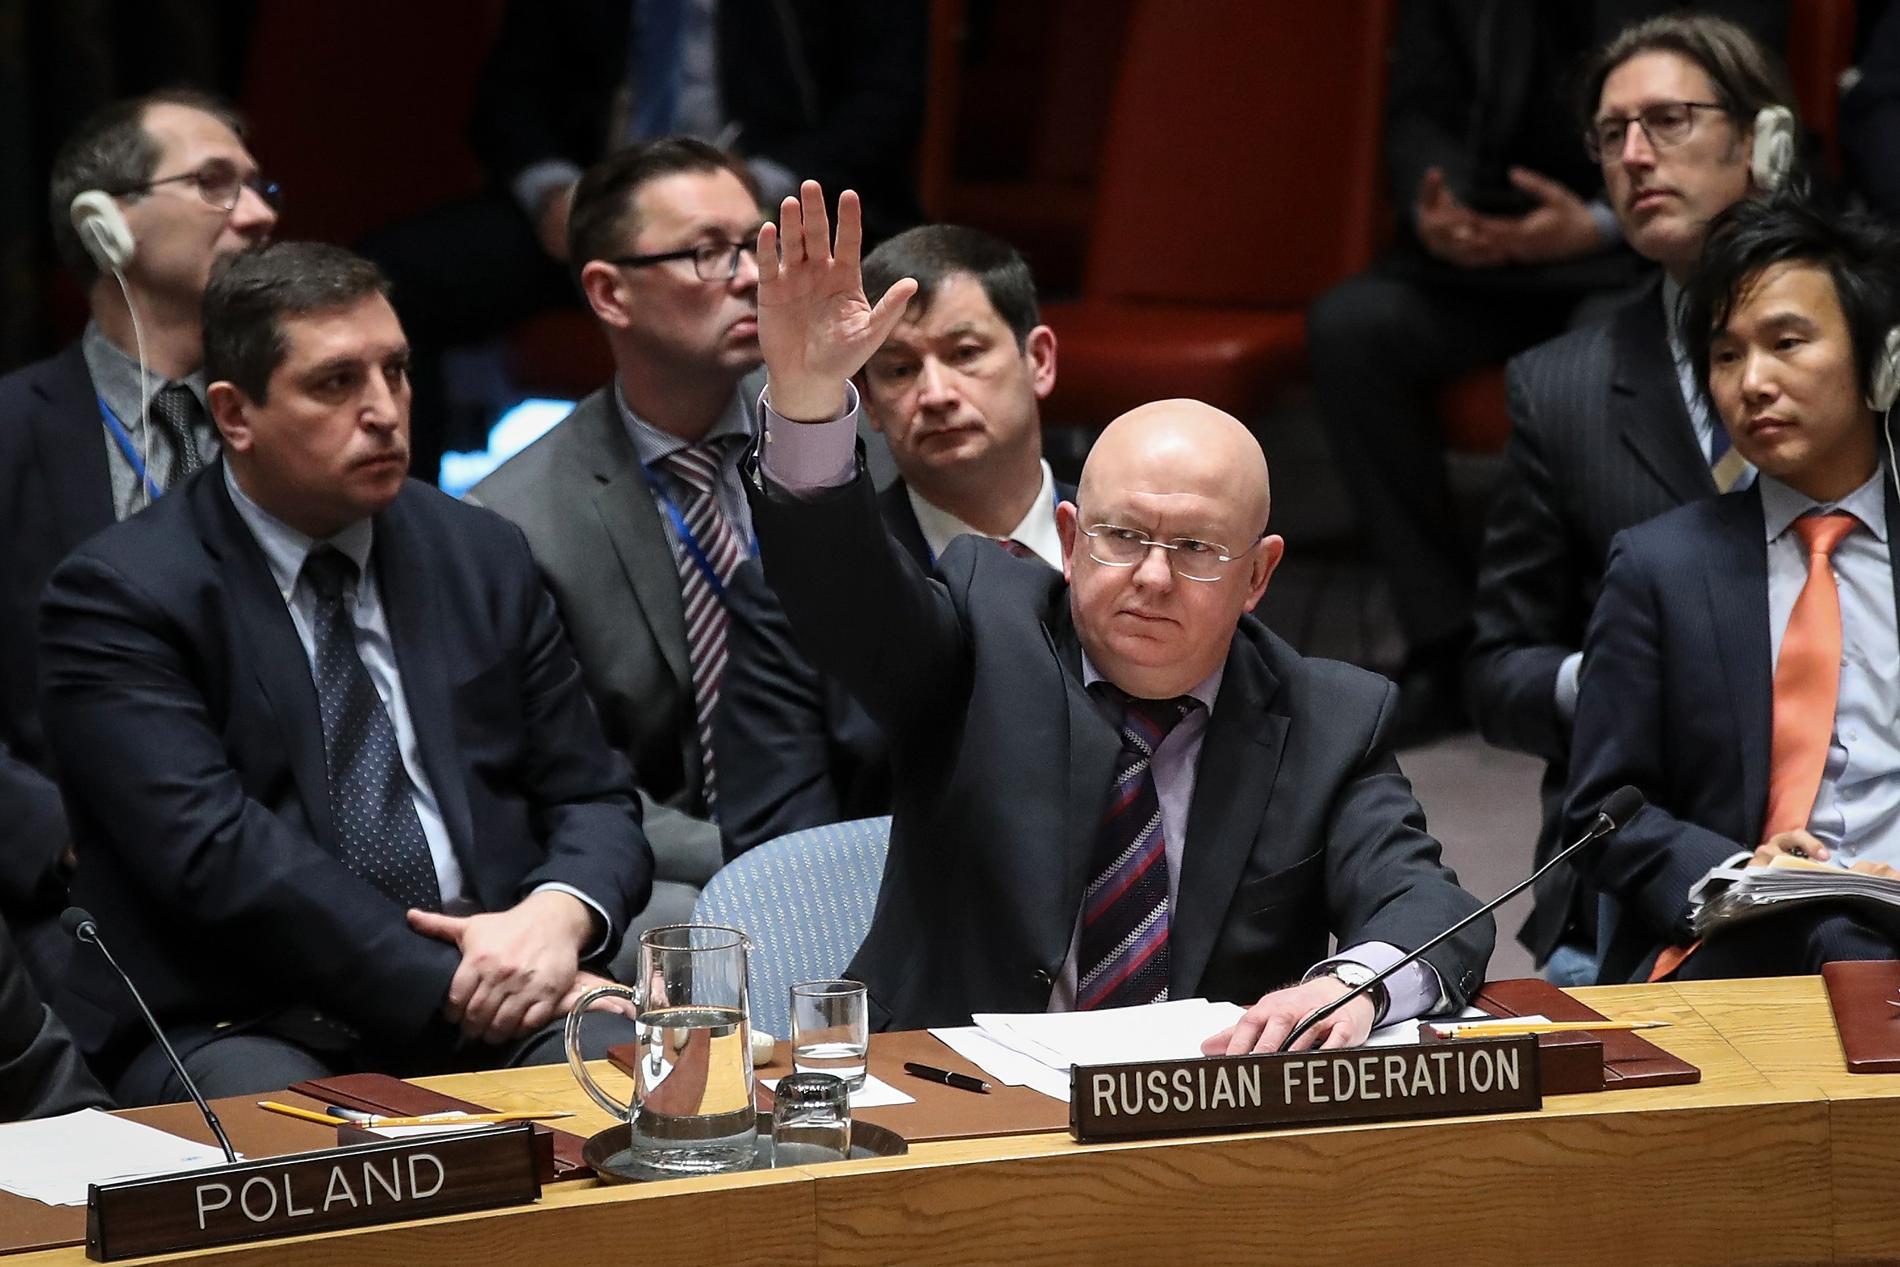 Den ryske FN-ambassadören Vassilij Nebenzia utnyttjade landets vetorätt i FN för tolfte gången när det gäller åtgärder mot Assad-regimen i Syrien.